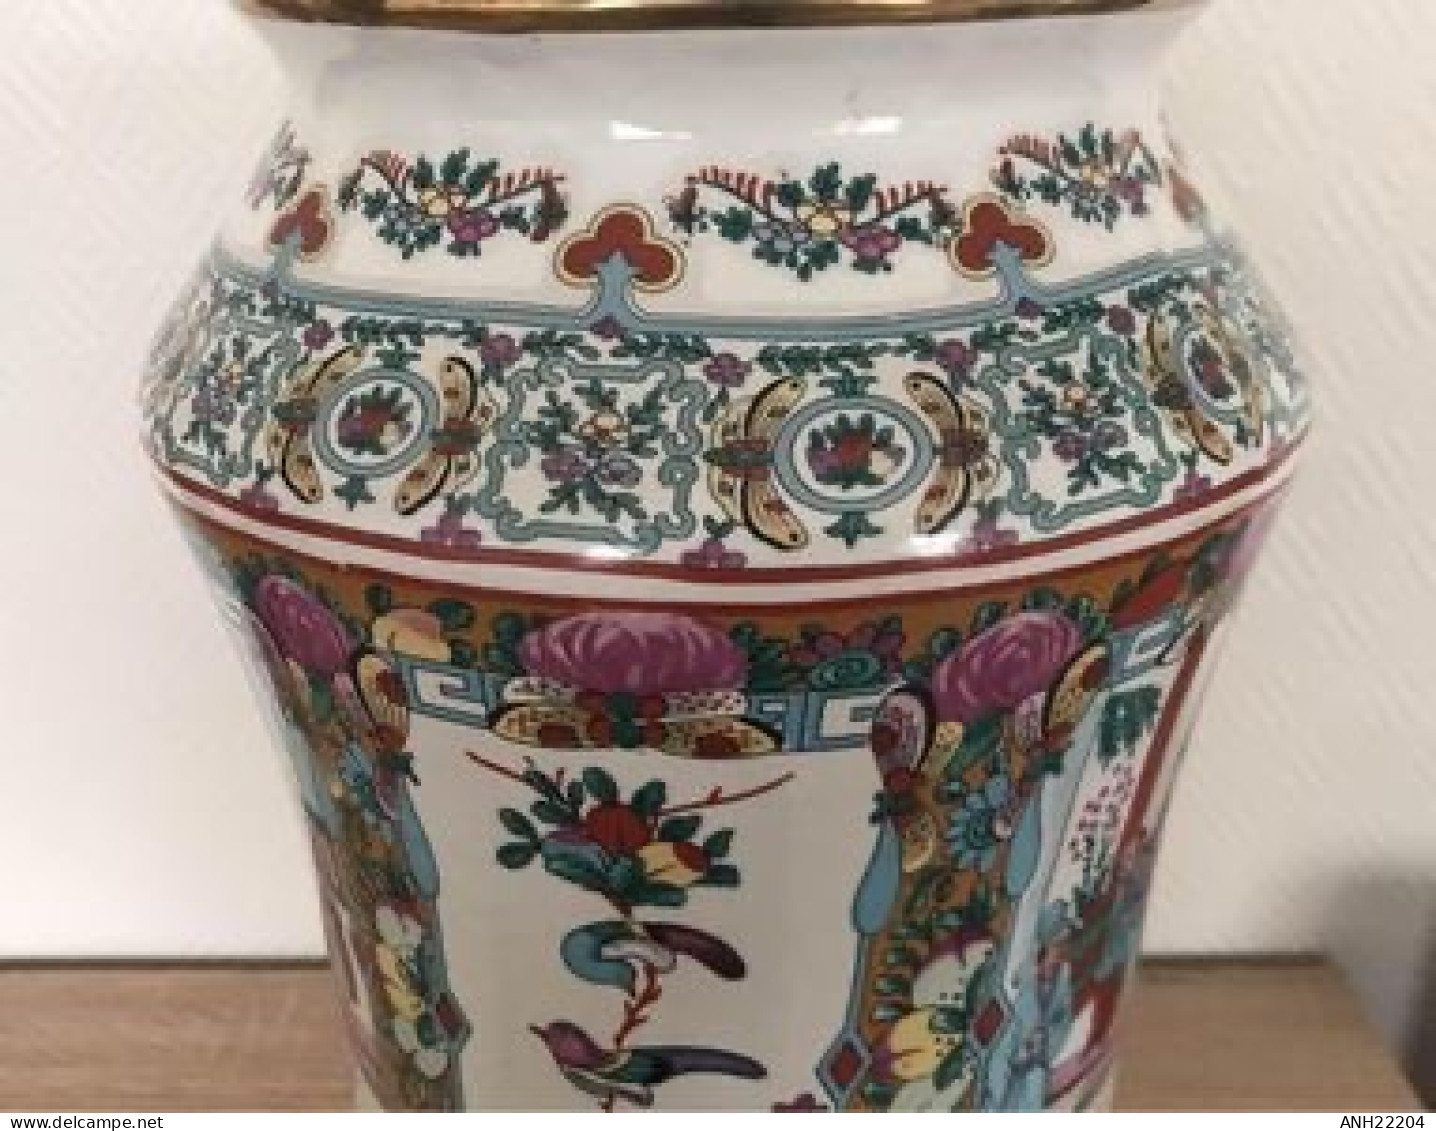 Ancien vase balustre en céramique magnifiquement décoré, Chine, milieu 20ème, H : 48 cm